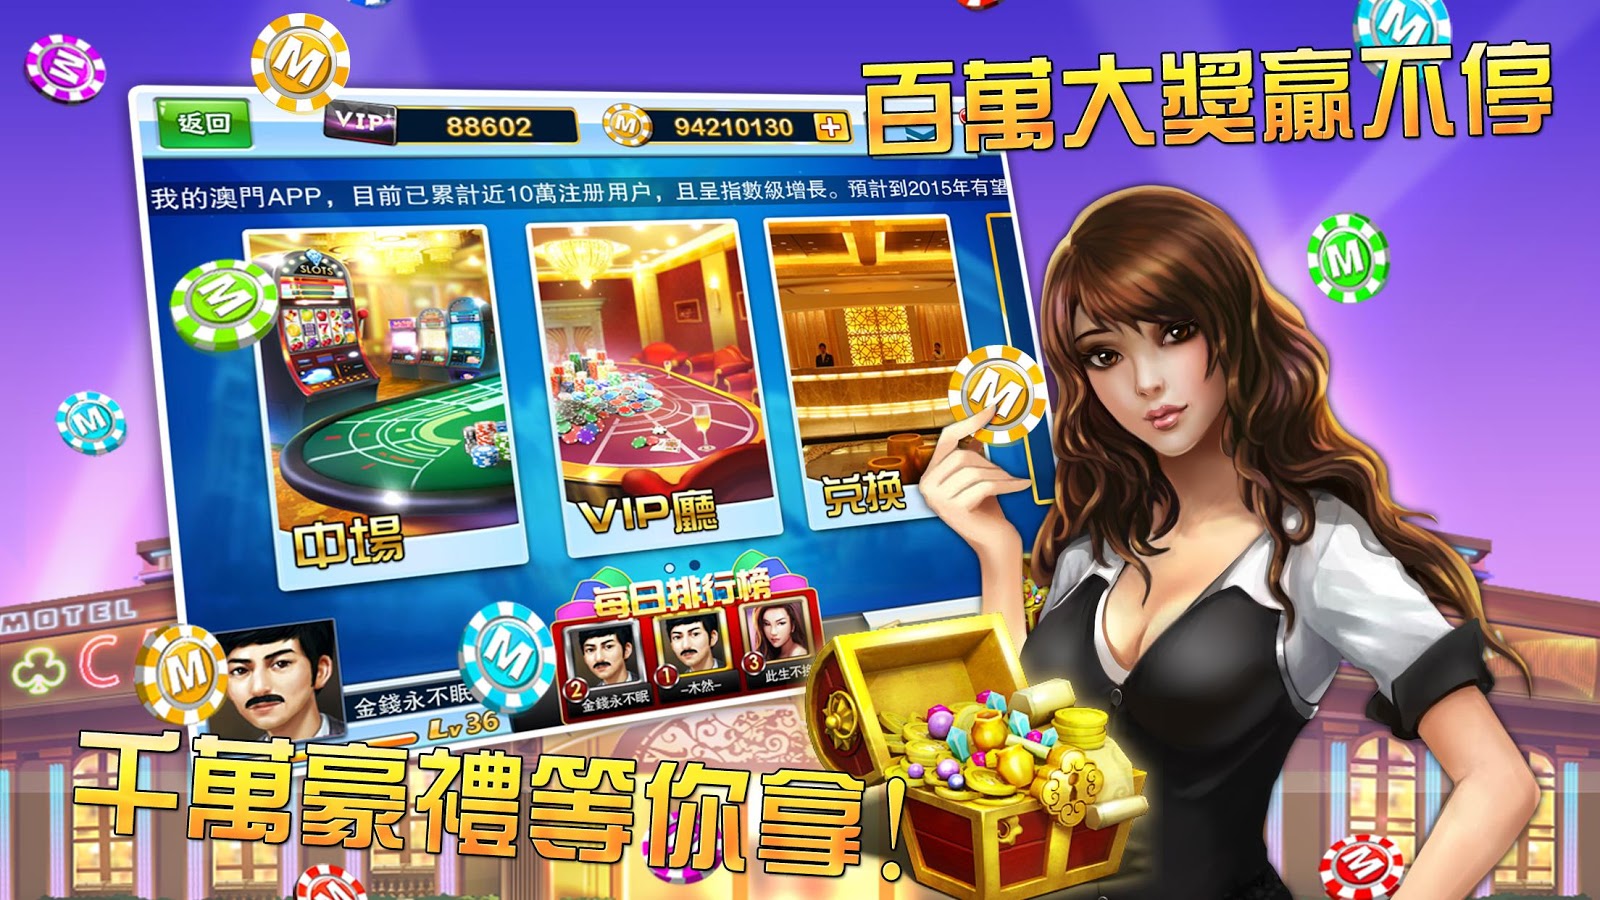 Casino Demo Multi Slots